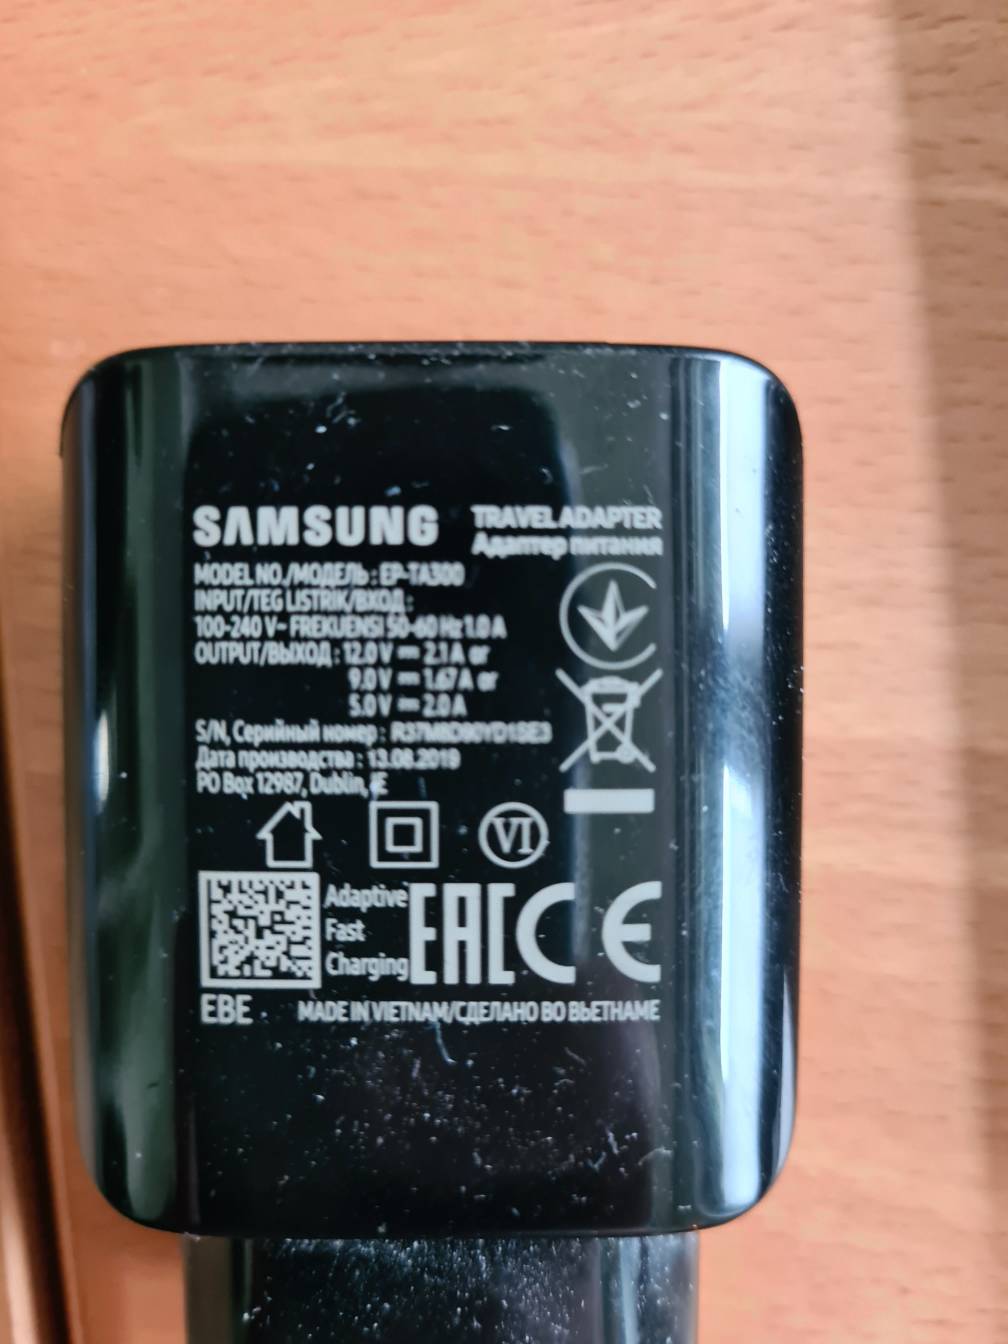 Samsung Wireless Charger Duo EP-N6100 funktioniert nicht richtig – Seite 2  - Samsung Community